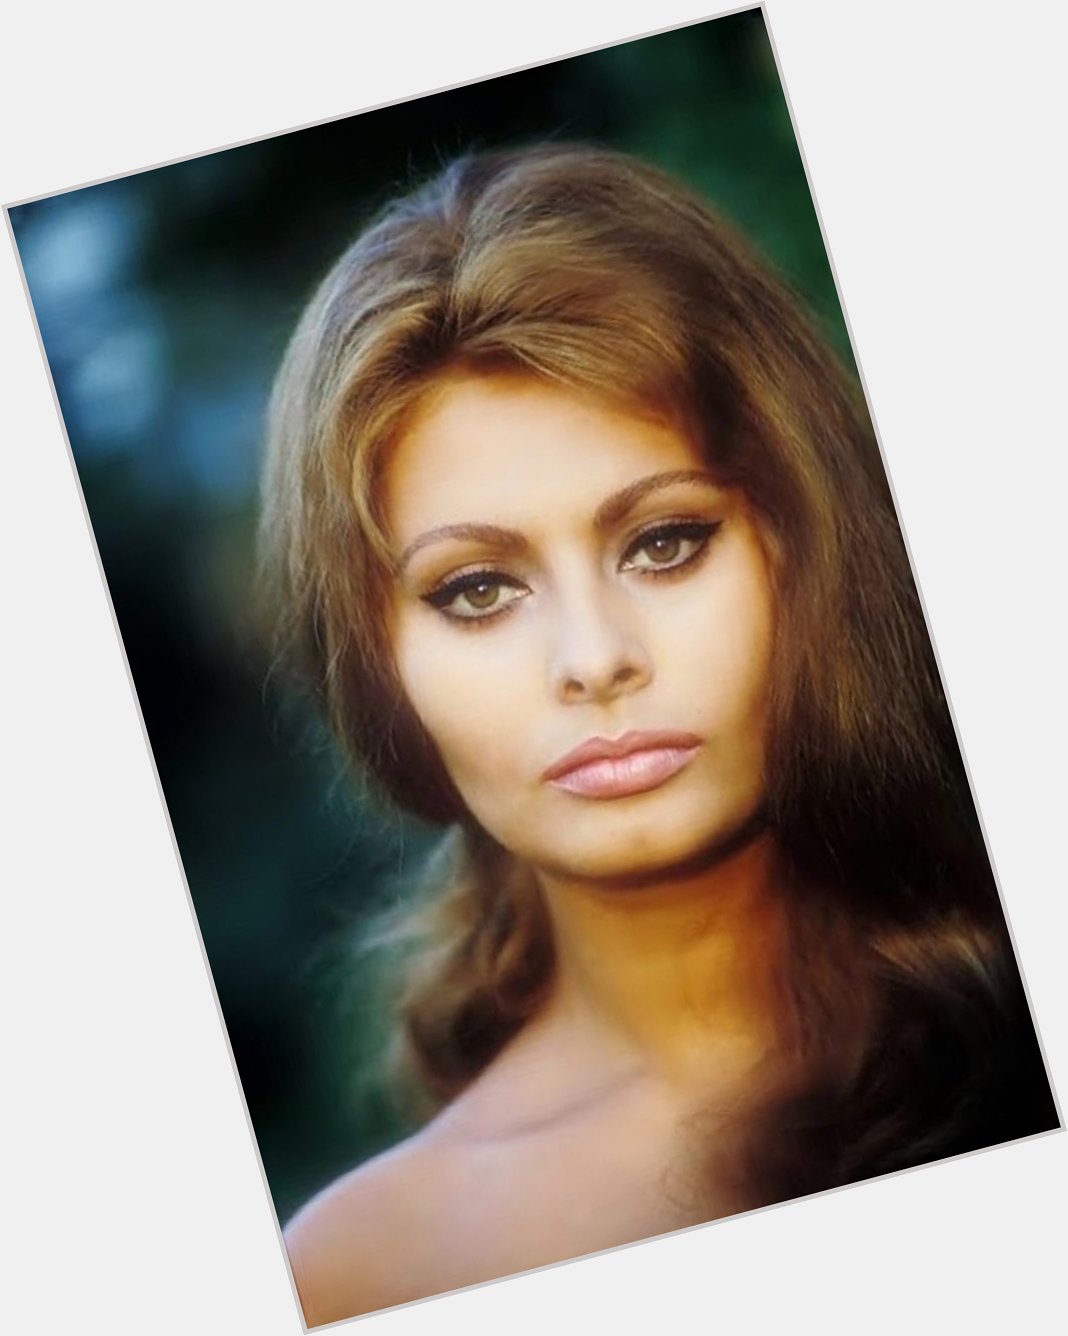 Happy Sophia Loren\s Birthday!! 